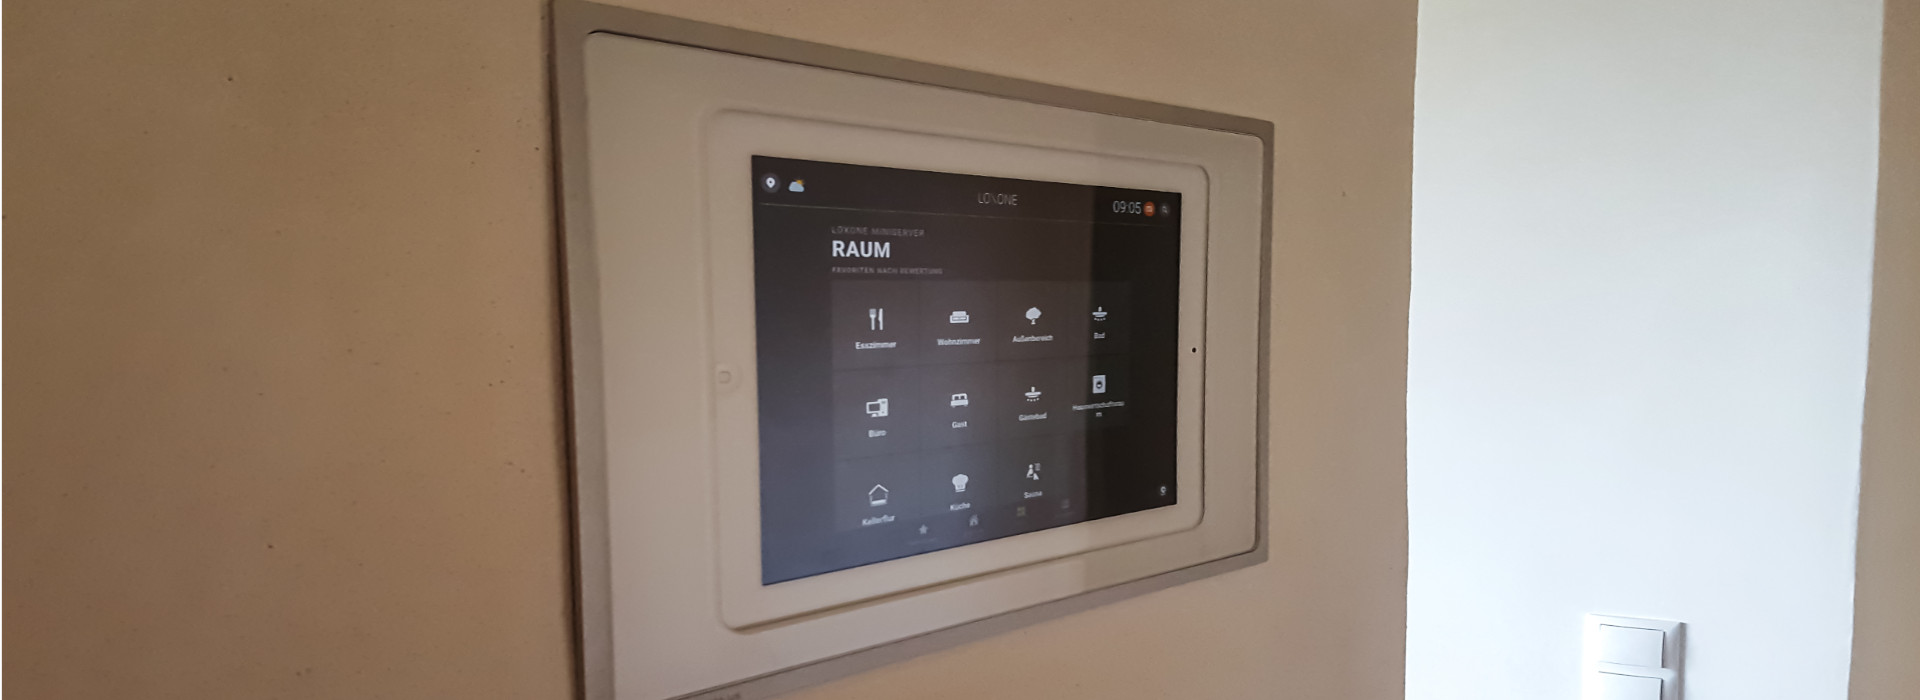 Smarthome: Das Foto zeigt ein Bedienpanel für die smarte Steuerung von Technik im Haus - darunter Rolläden, Heizung und Soundanlage.